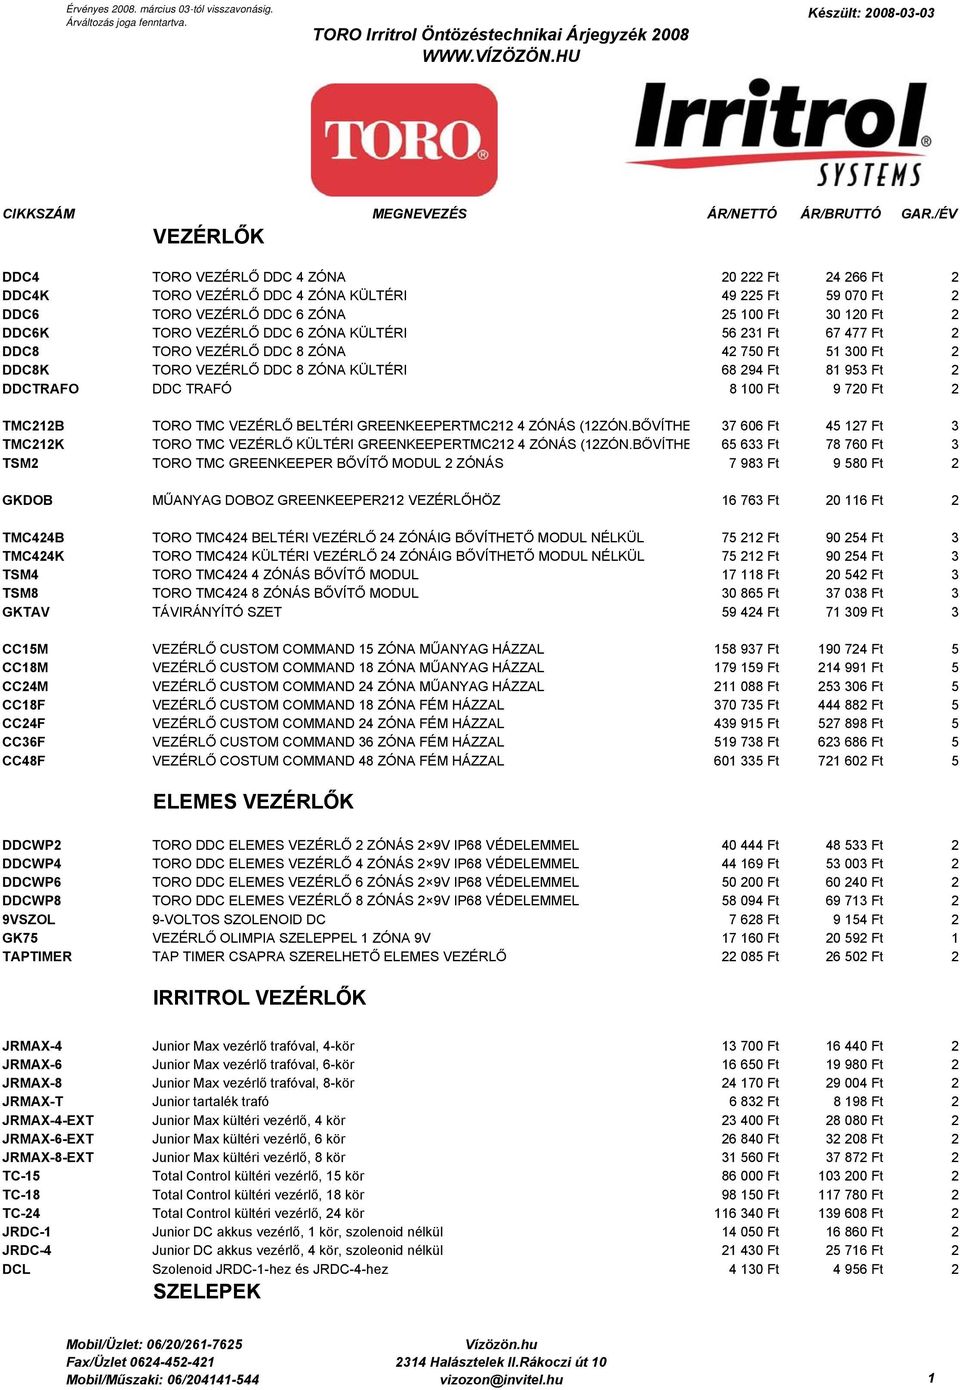 TORO Irritrol Öntözéstechnikai Árjegyzék CIKKSZÁM MEGNEVEZÉS ÁR/NETTÓ  ÁR/BRUTTÓ GAR./ÉV VEZÉRLŐK - PDF Ingyenes letöltés